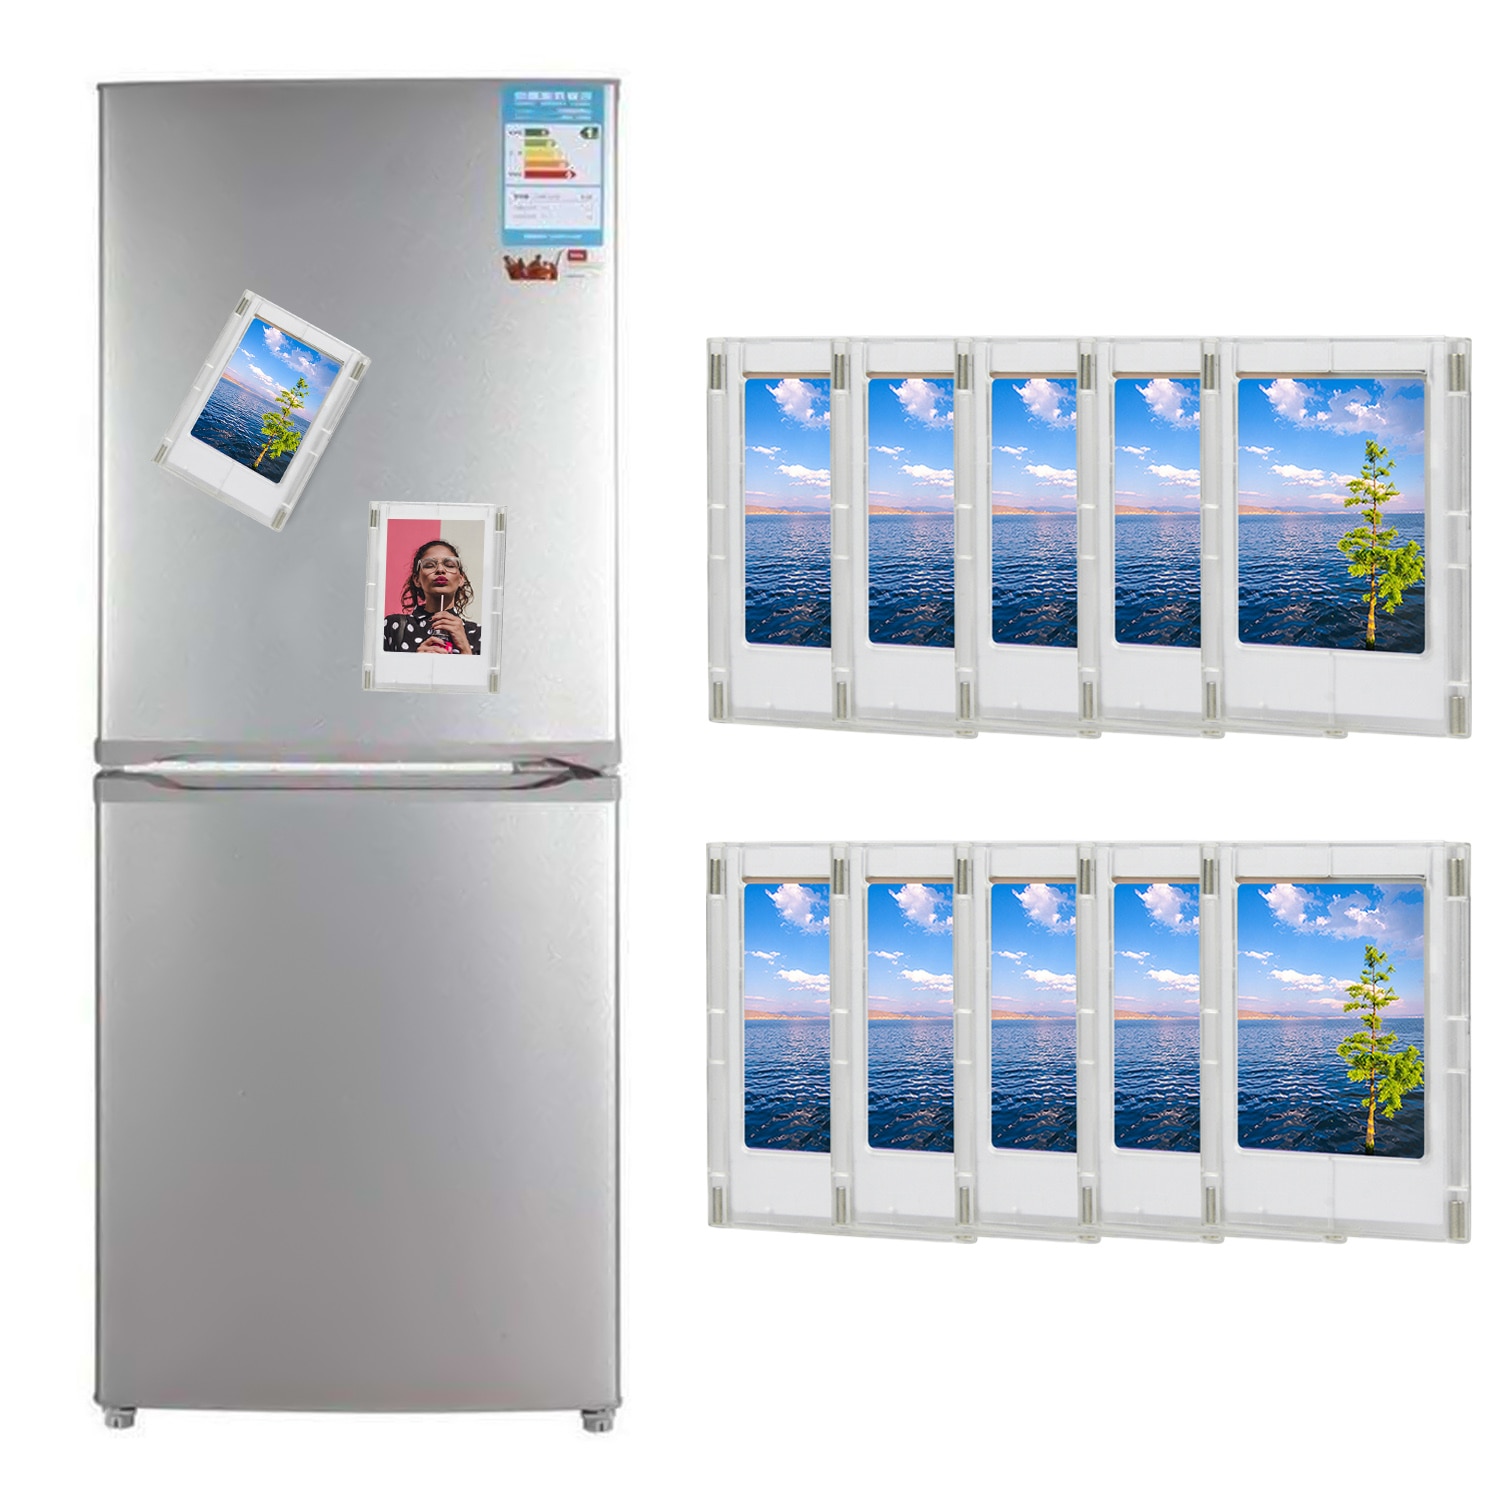 10 stk gratis kombination køleskabsmagnet magnetiske fotorammer til fujifilm instax mini 8 9 7s 70 90 3 tommer billeder